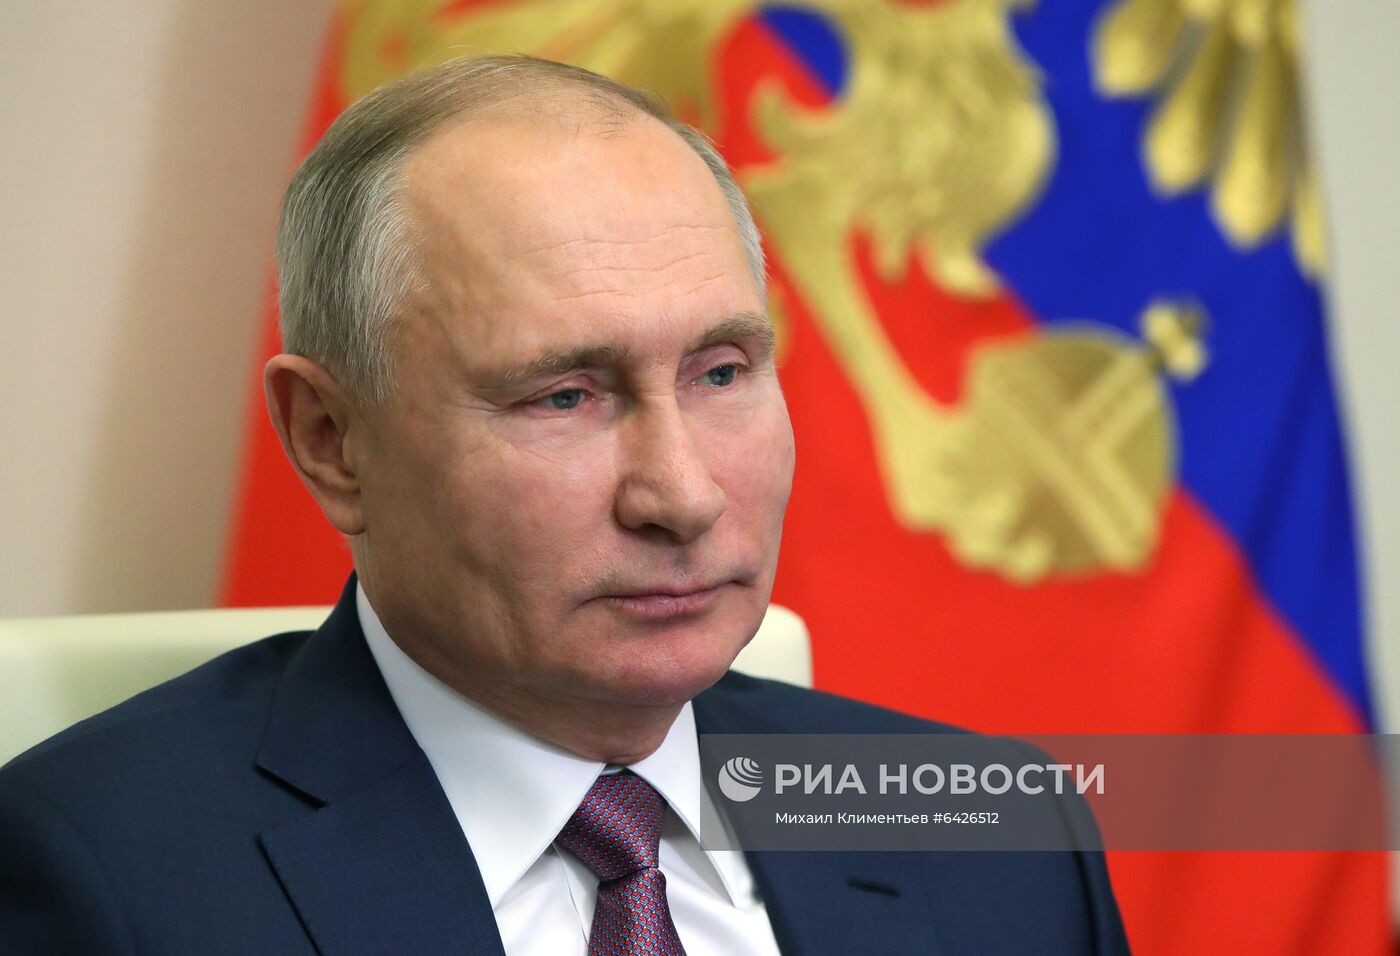 Президент РФ В. Путин поздравил членов Правительства РФ с наступающим Новым годом